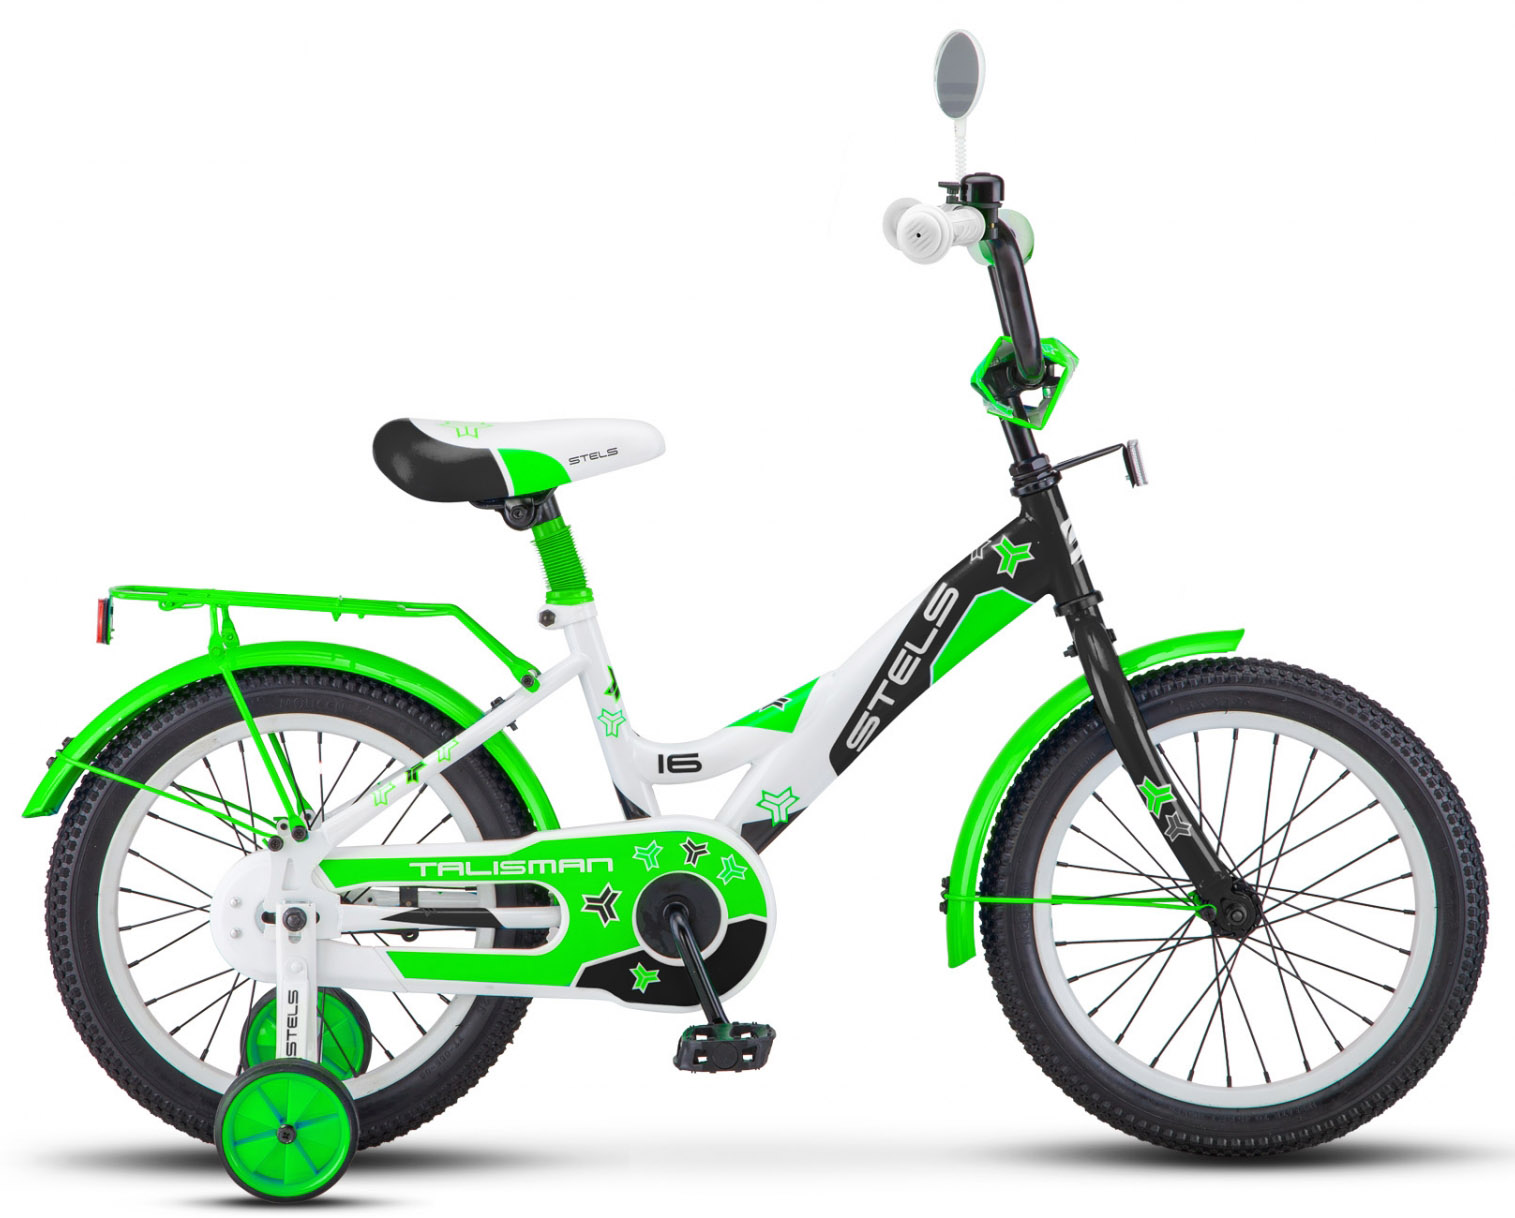  Велосипед трехколесный детский велосипед Stels Talisman 16 (Z010) 2018